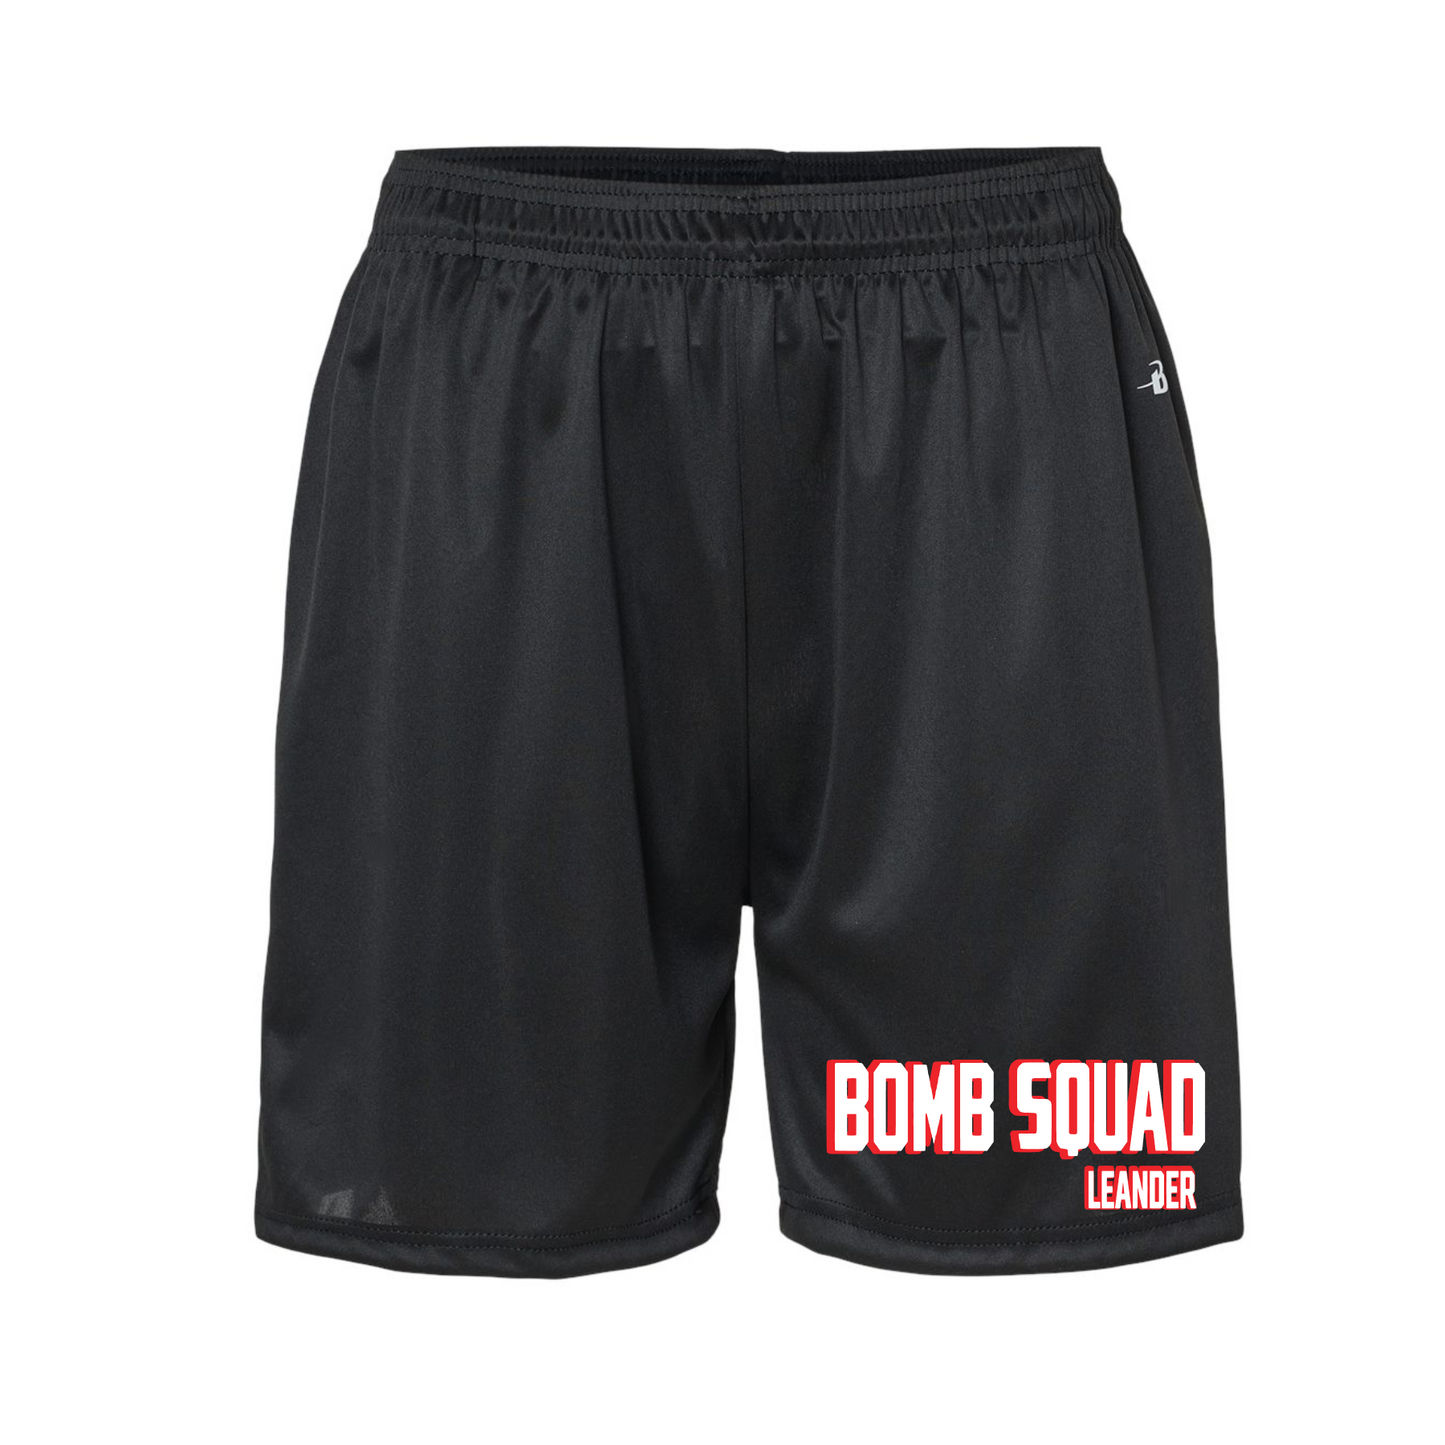 Black Bomb Squad Drifit Shorts, Leander Bomb Squad Shorts, Bomb Squad Baseball Shorts